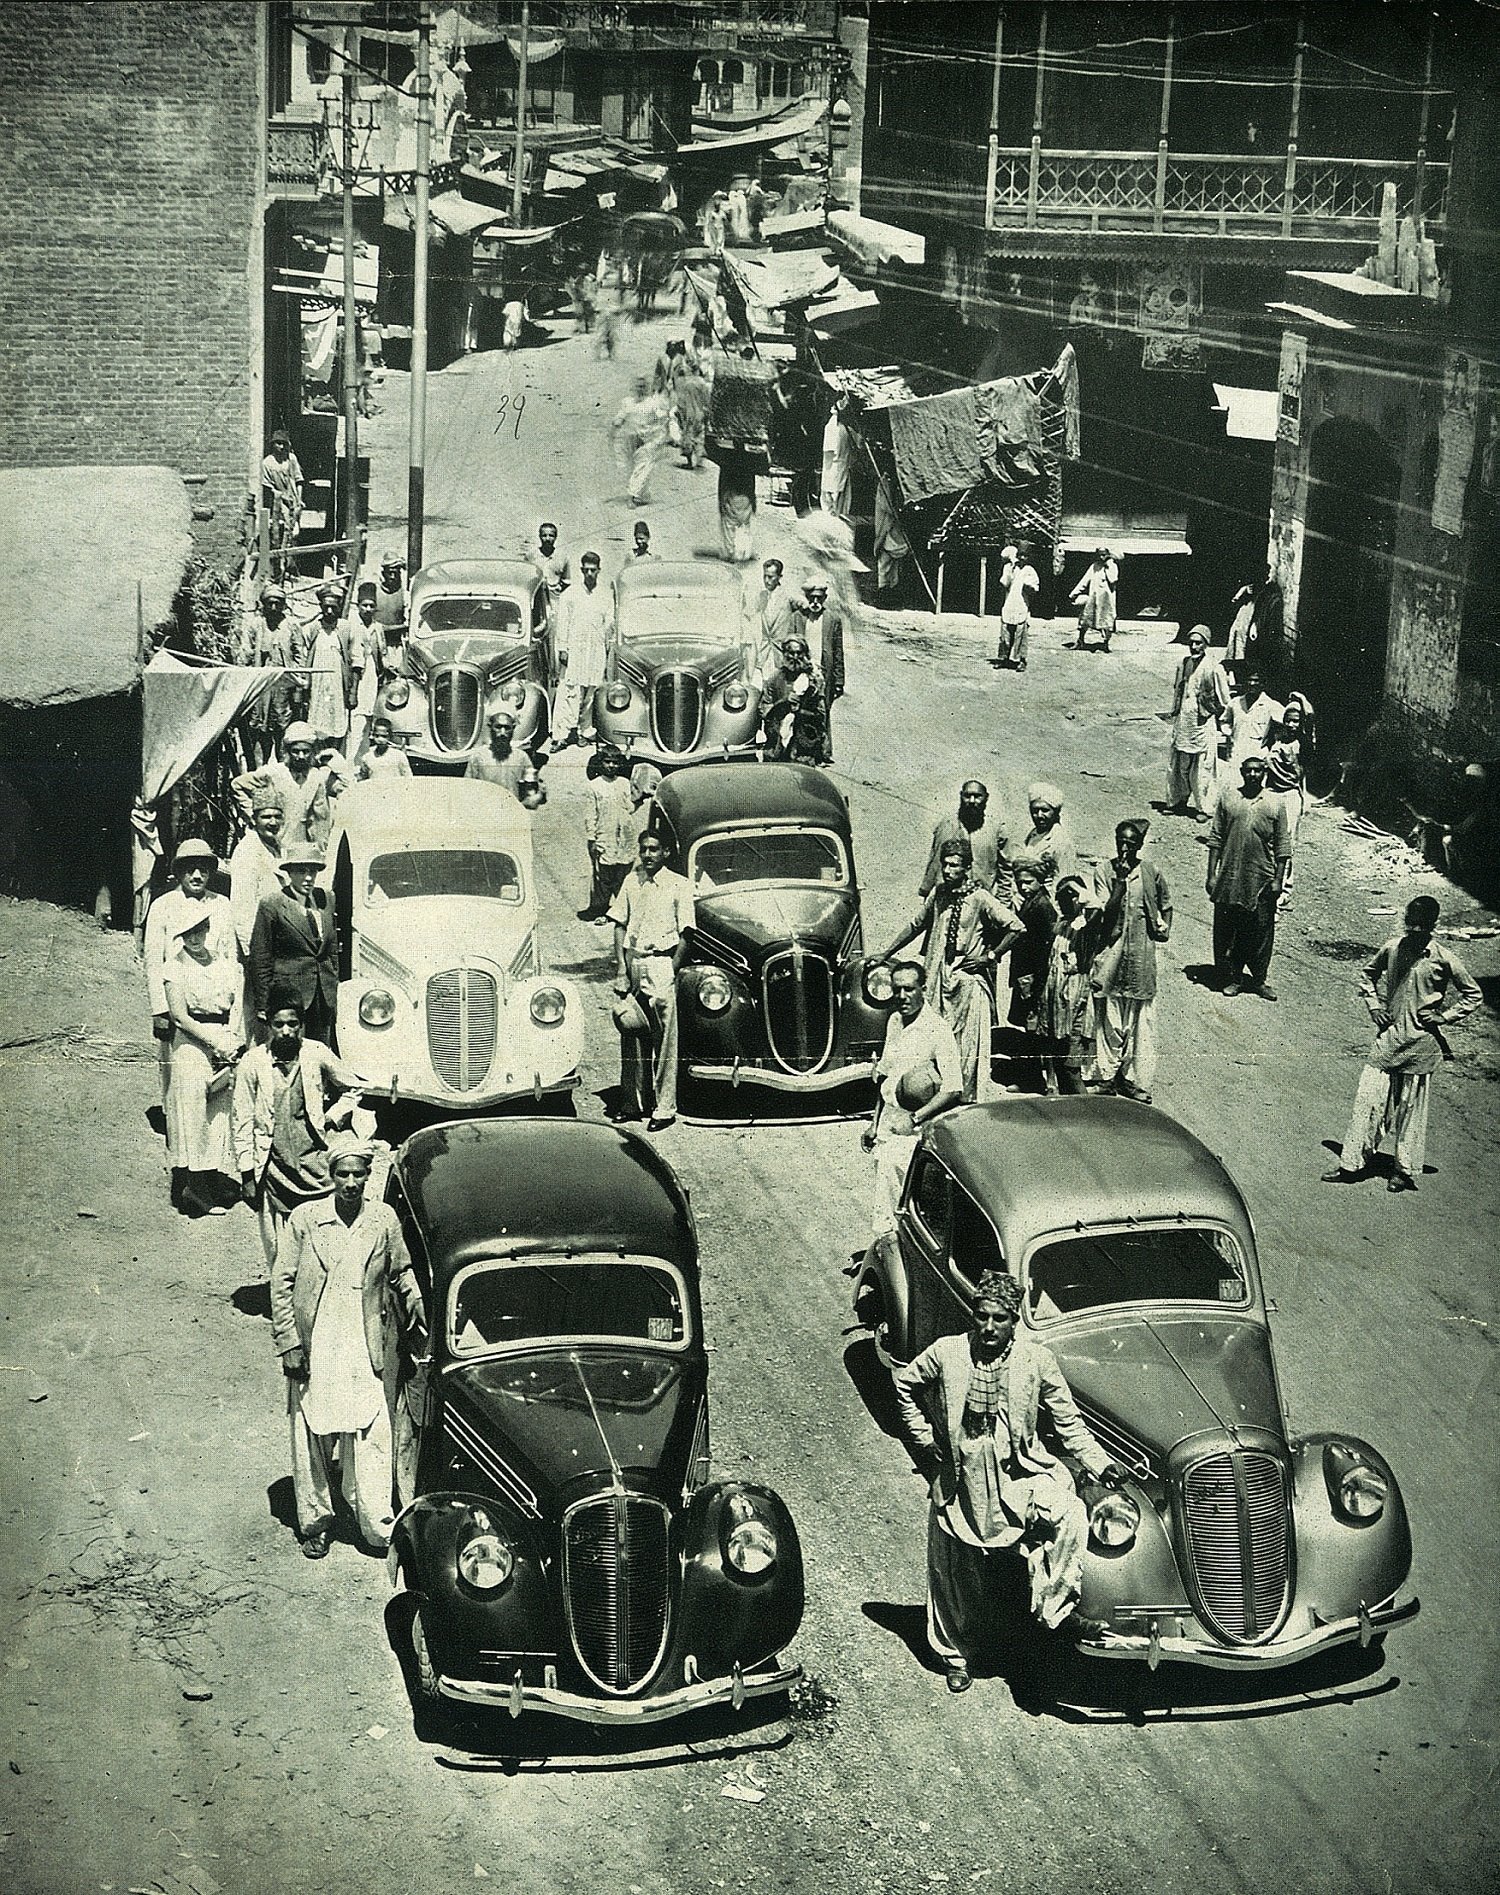 Celkem vzniklo v letech 1934 – 1946 více než 21 000 zástupců modelové řady Škoda Popular, z toho asi 250 kusů po válce. Jen v letech 1935 až 1939 bylo vyvezeno takřka 6000 exemplářů.